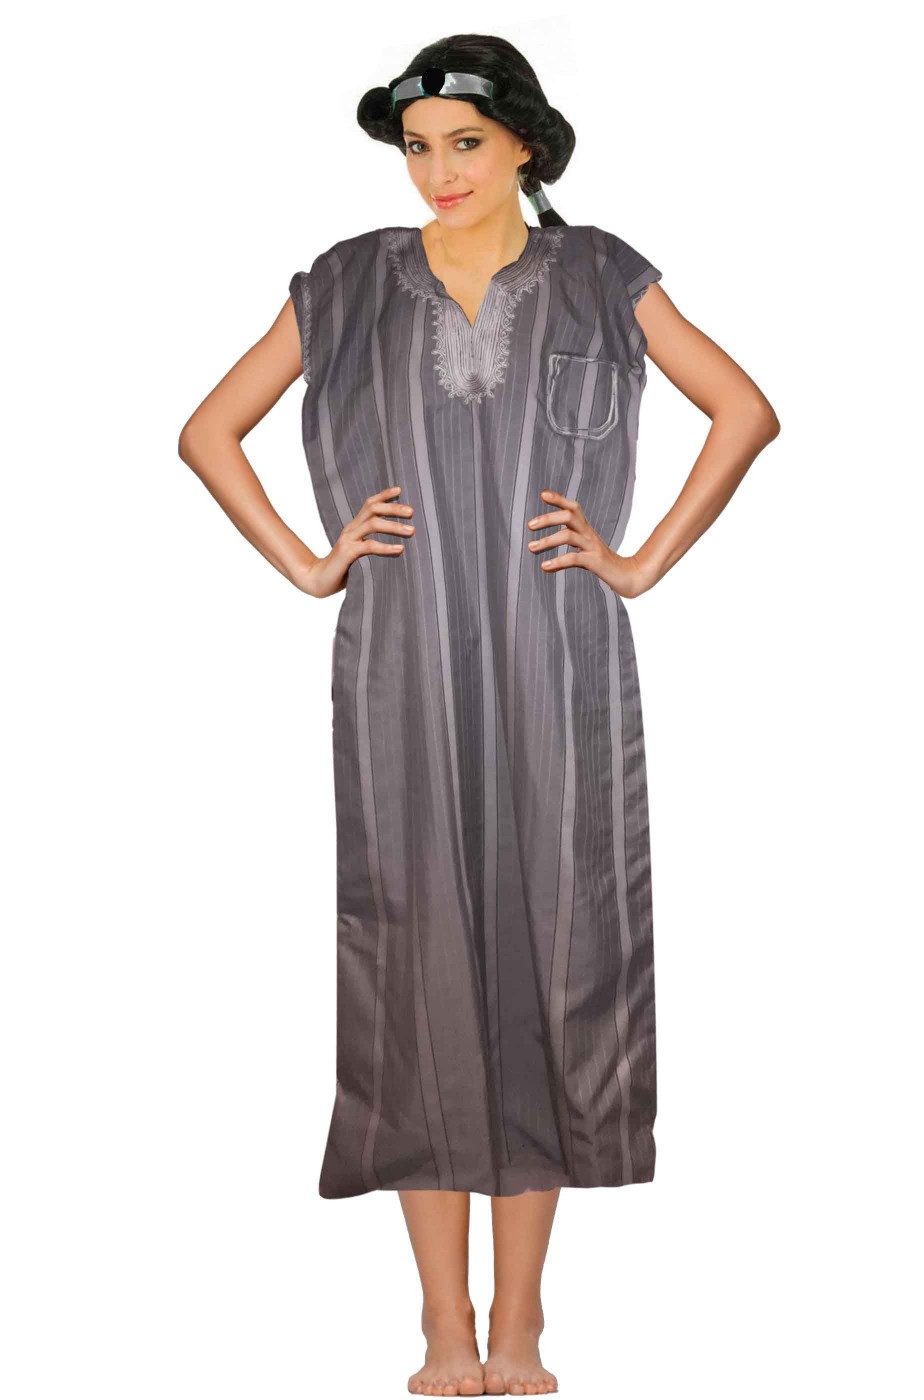 Costume donna araba adulta grigia con ricamo 